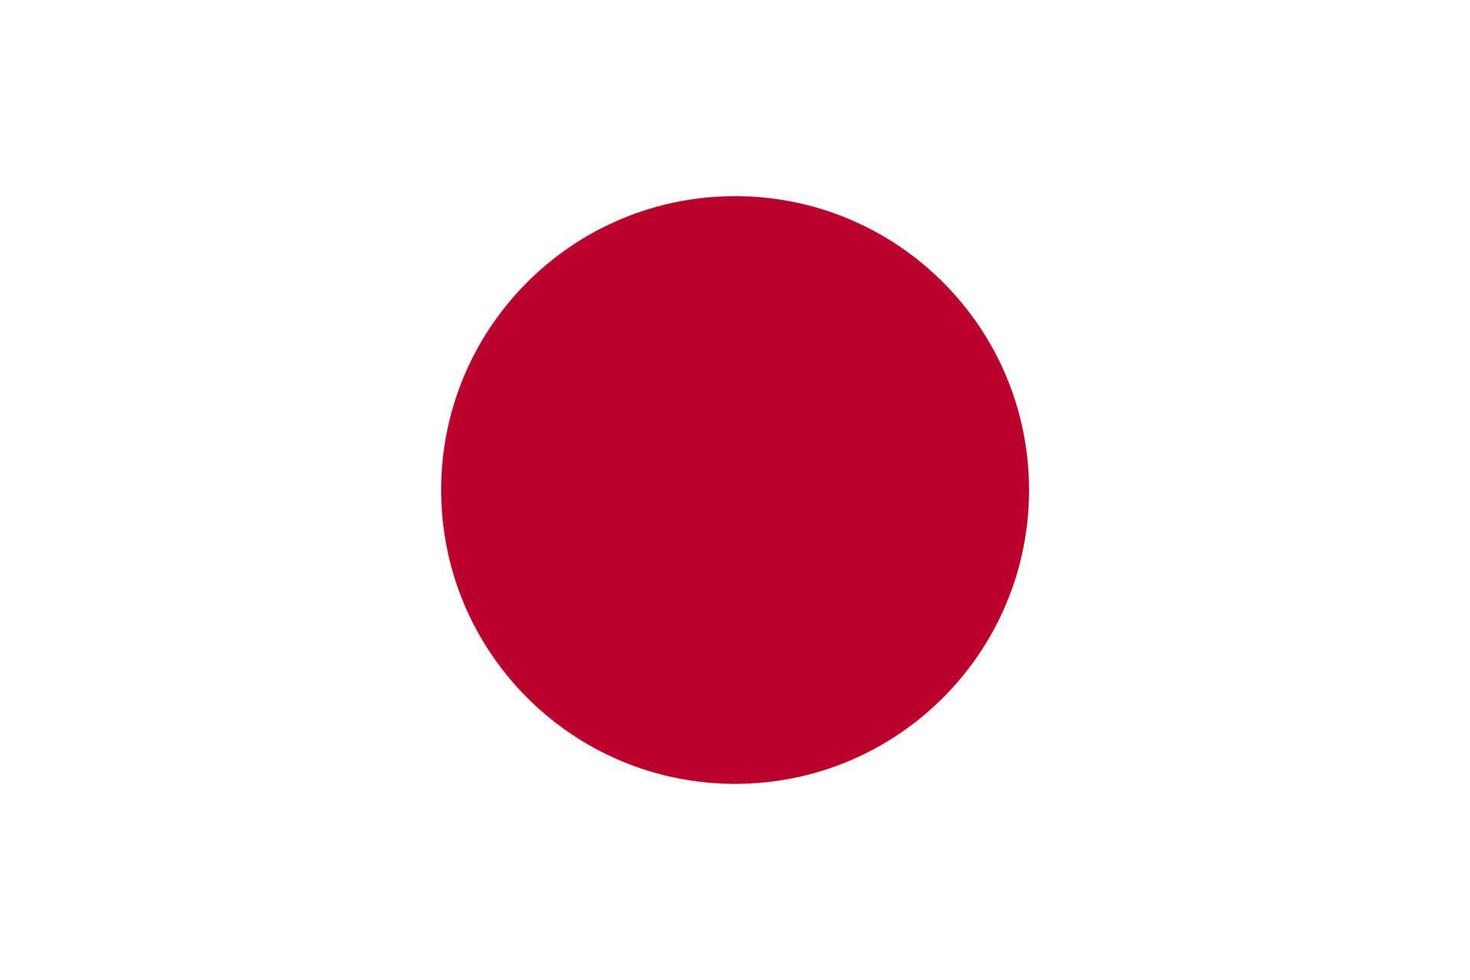 dimensione standard della bandiera del giappone in asia. illustrazione vettoriale